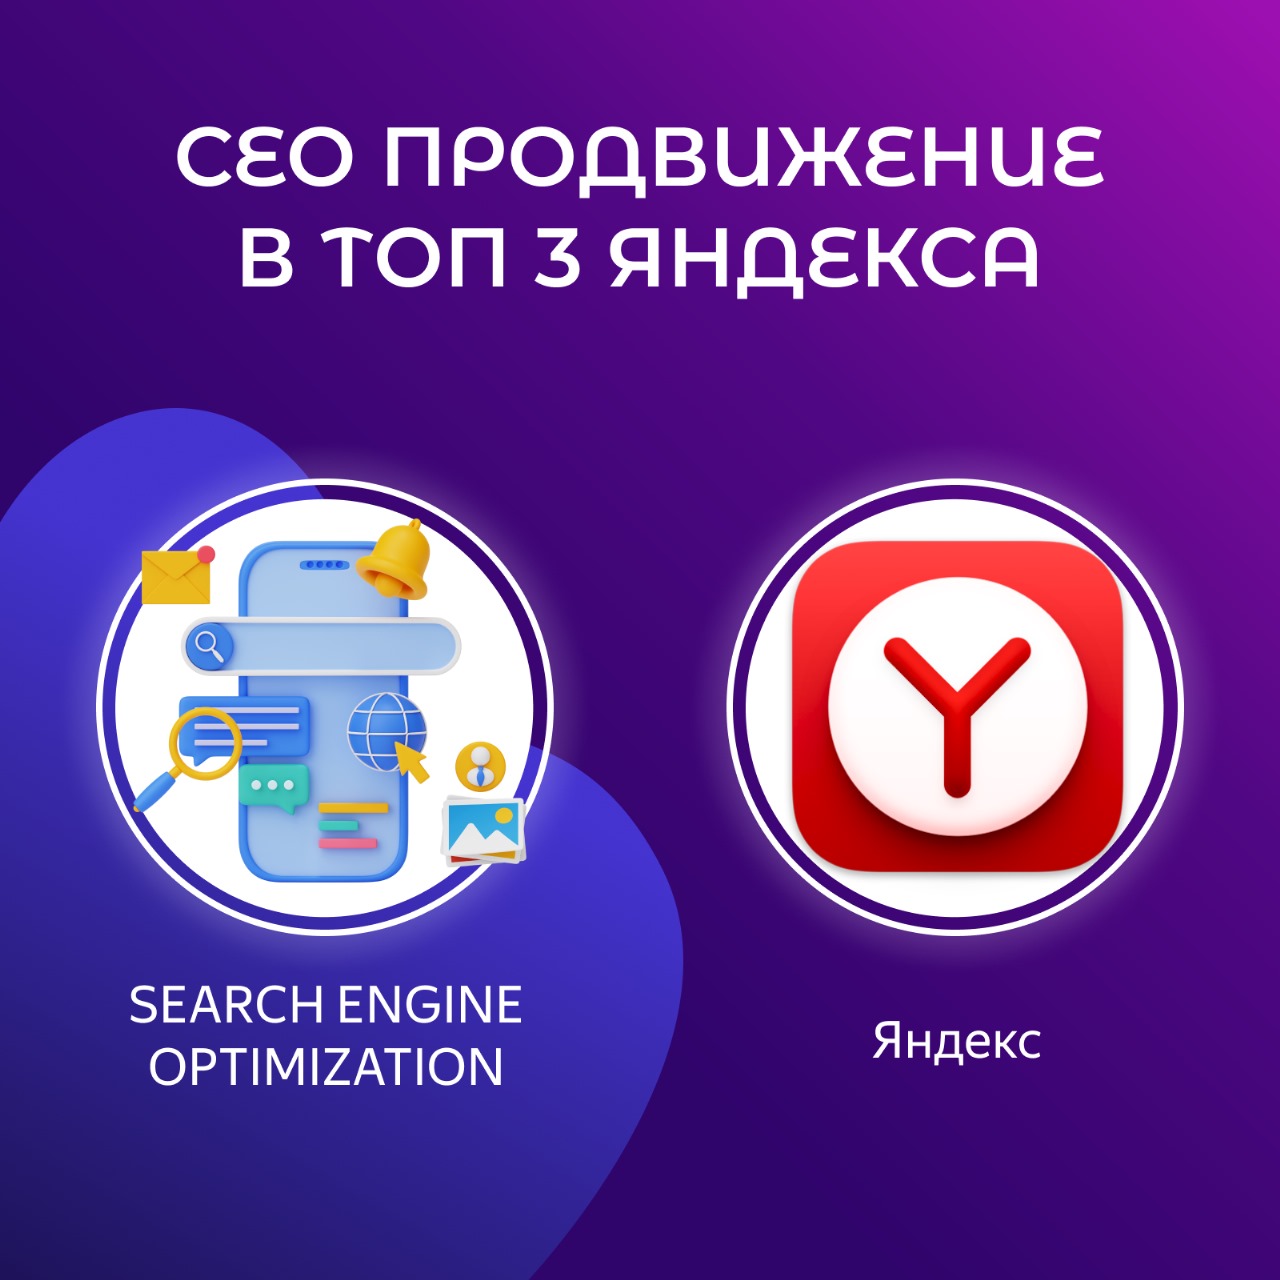 Сео продвижение в топ3 Яндекса